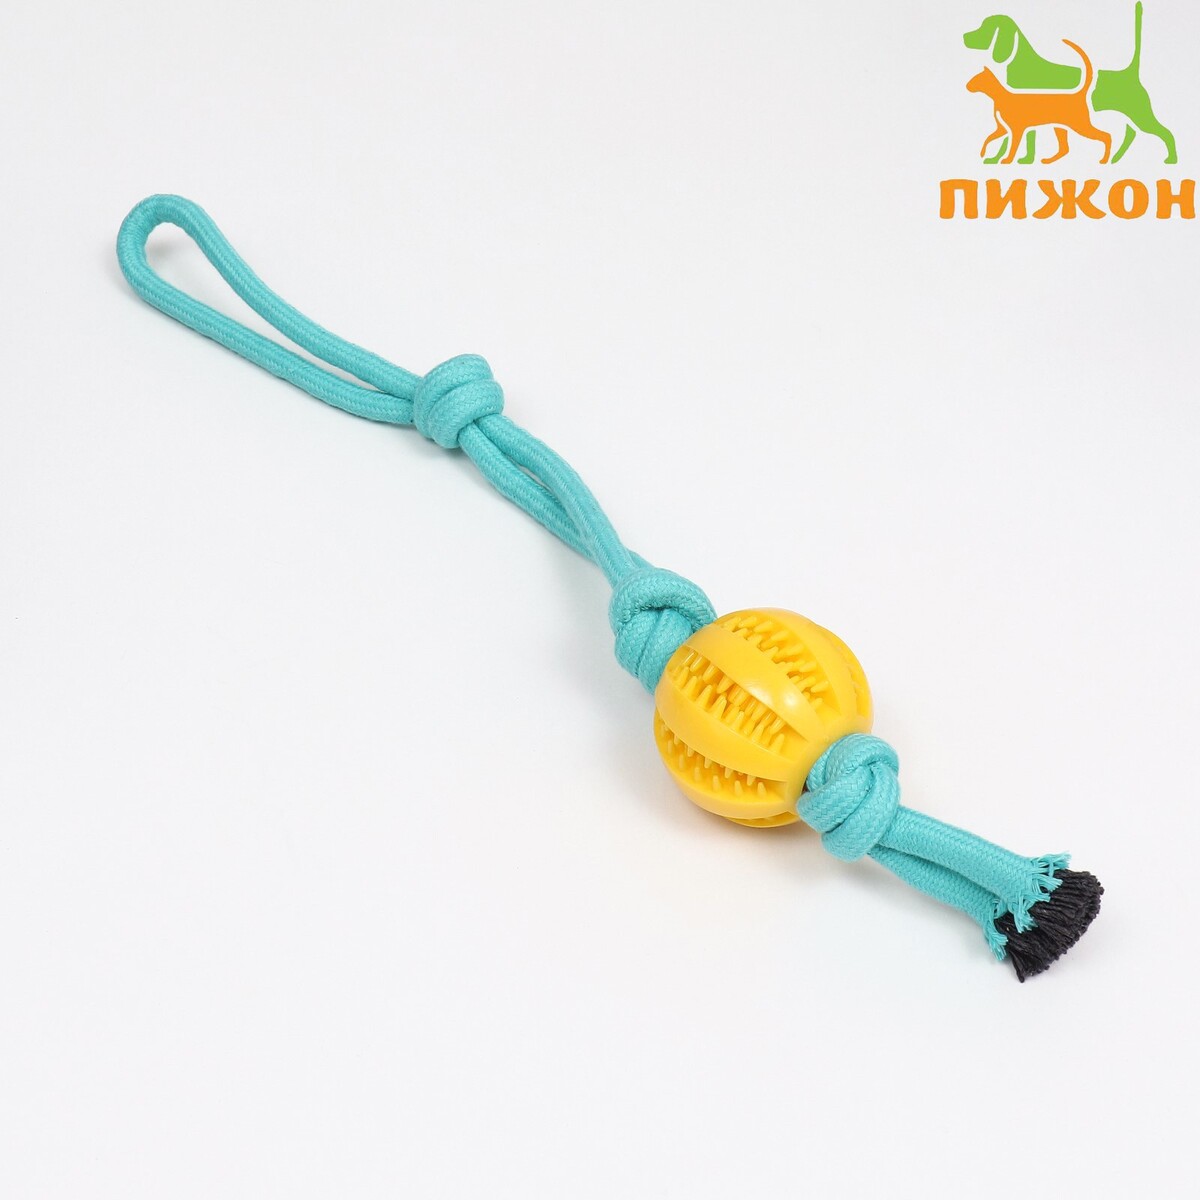 Игрушка канатная плетеная с мячом, до 45 см, до 115 г, голубая/желтая игрушка из термопластичной резины